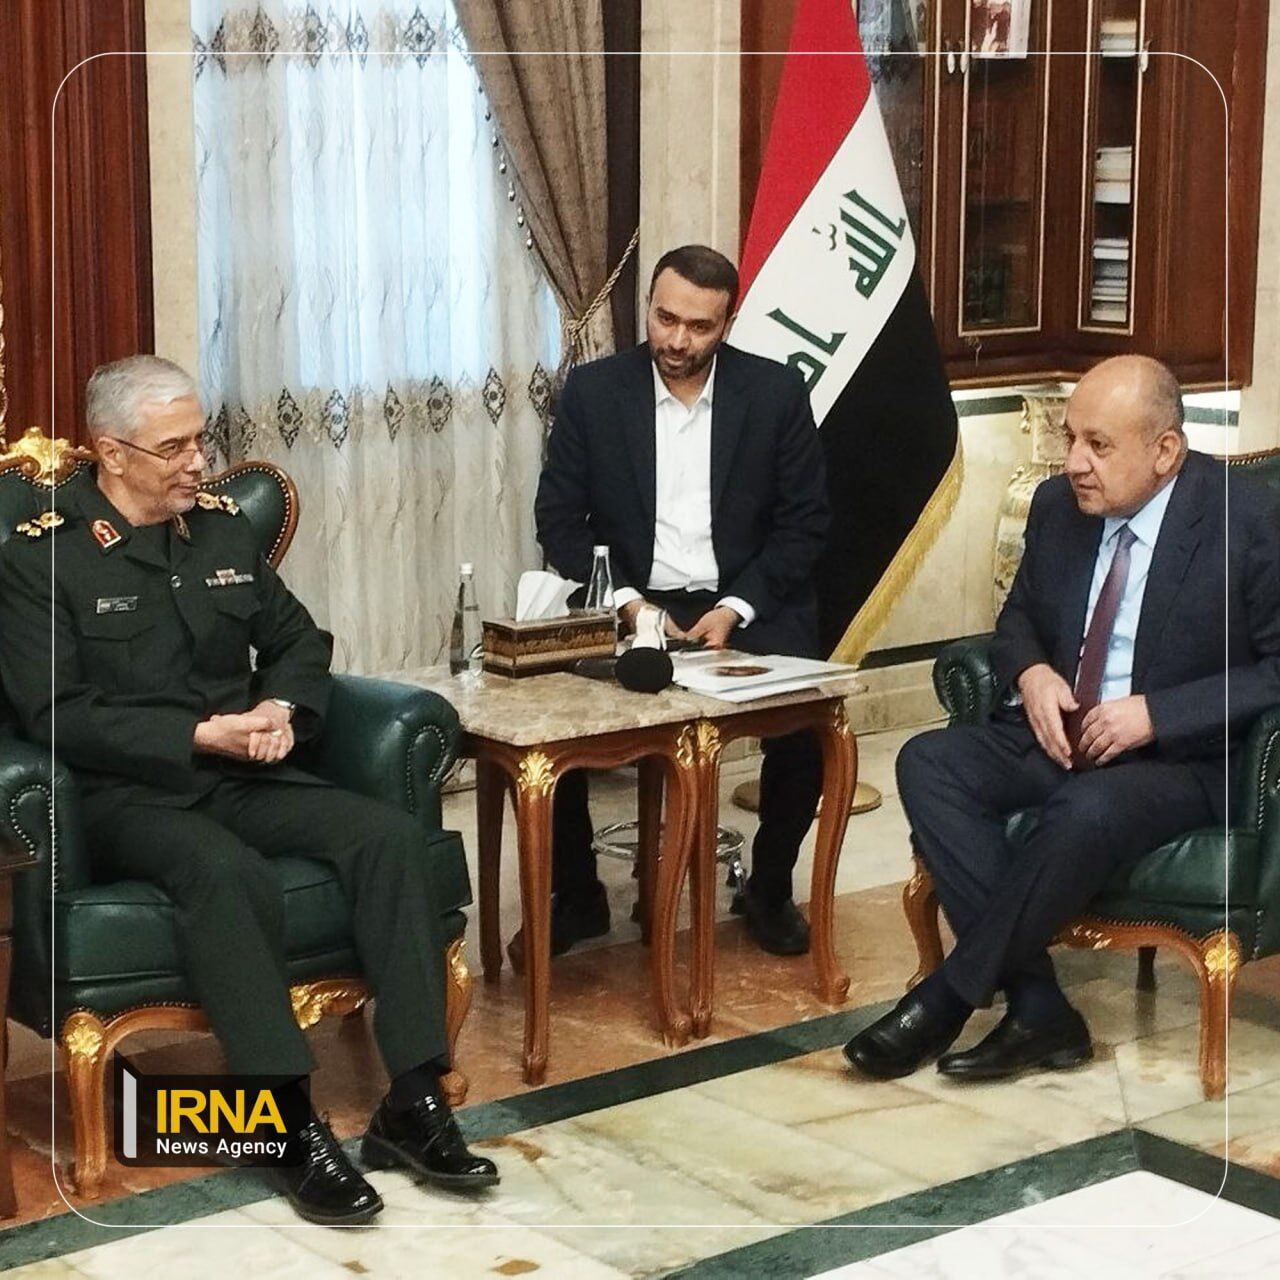 Le chef d'état-major général des forces armées iraniennes rencontre le ministre irakien de la Défense à Bagdad